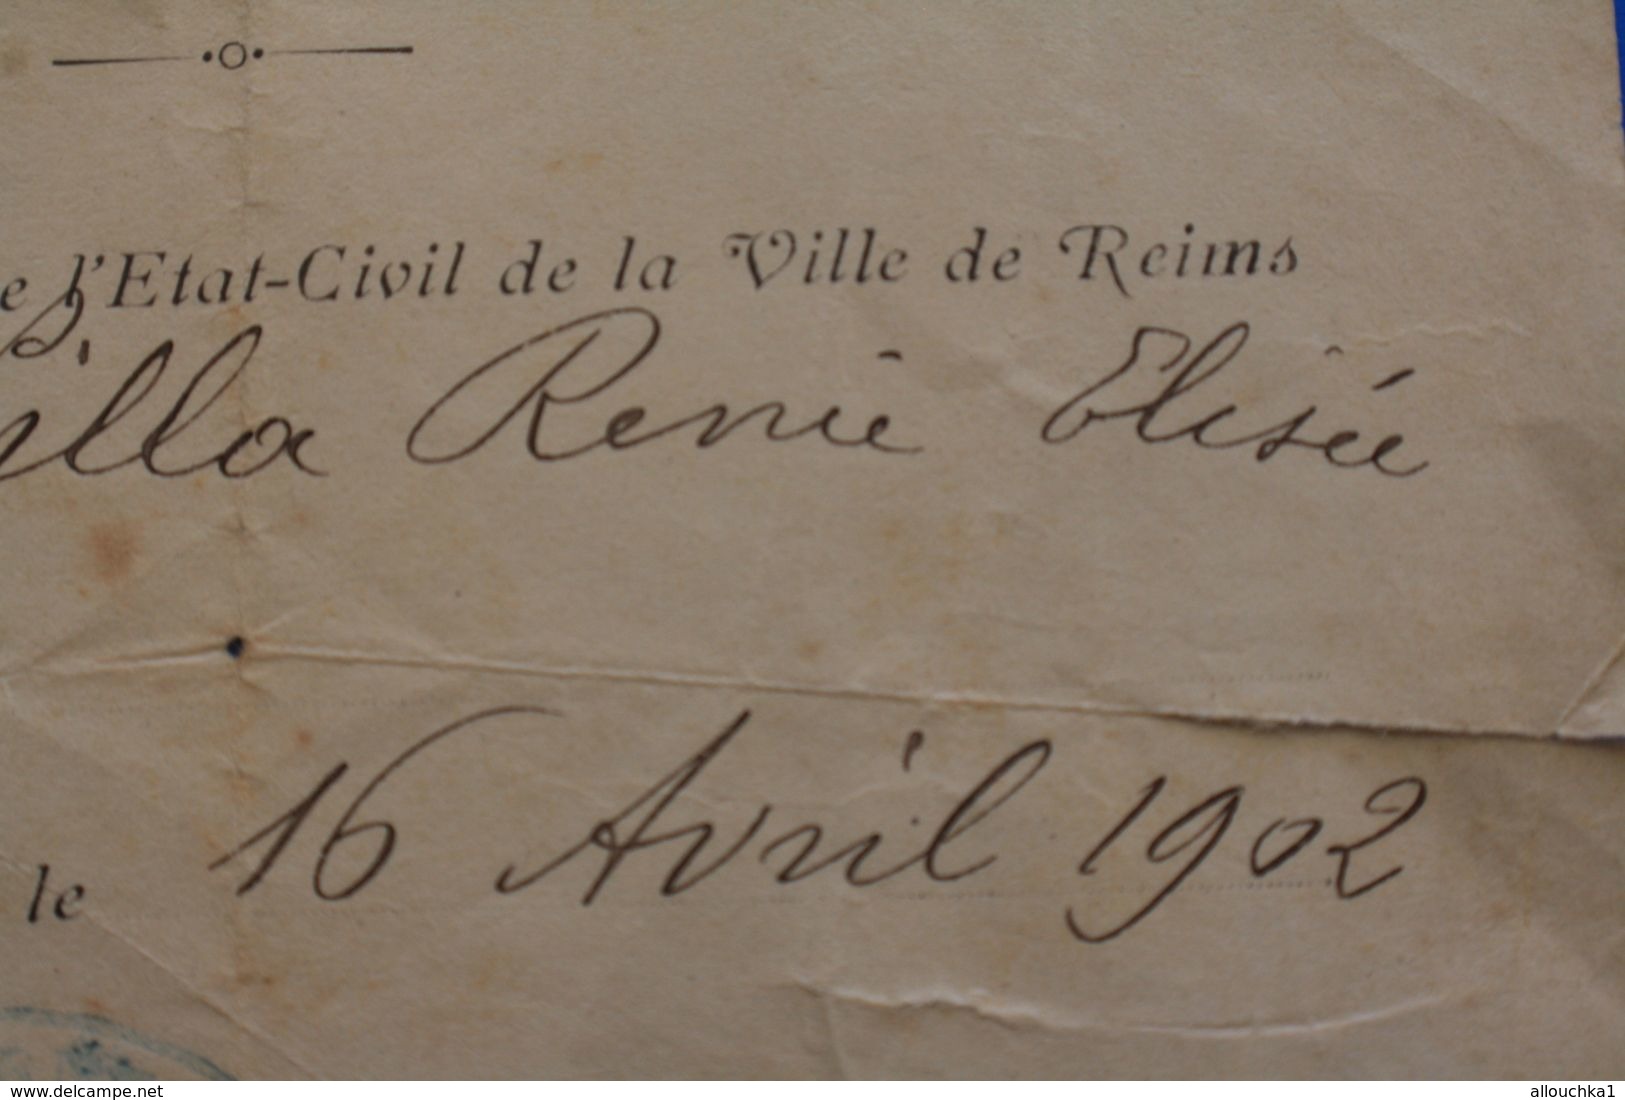 16 AVRIL 1902 MAIRIE DE REIMS REGISTRE DE LA VILLE ACTE DE NAISSANCE EST NEE VILLA RENÉE ELYSÉE  FAIRE PART MANUSCRIT - Nascita & Battesimo